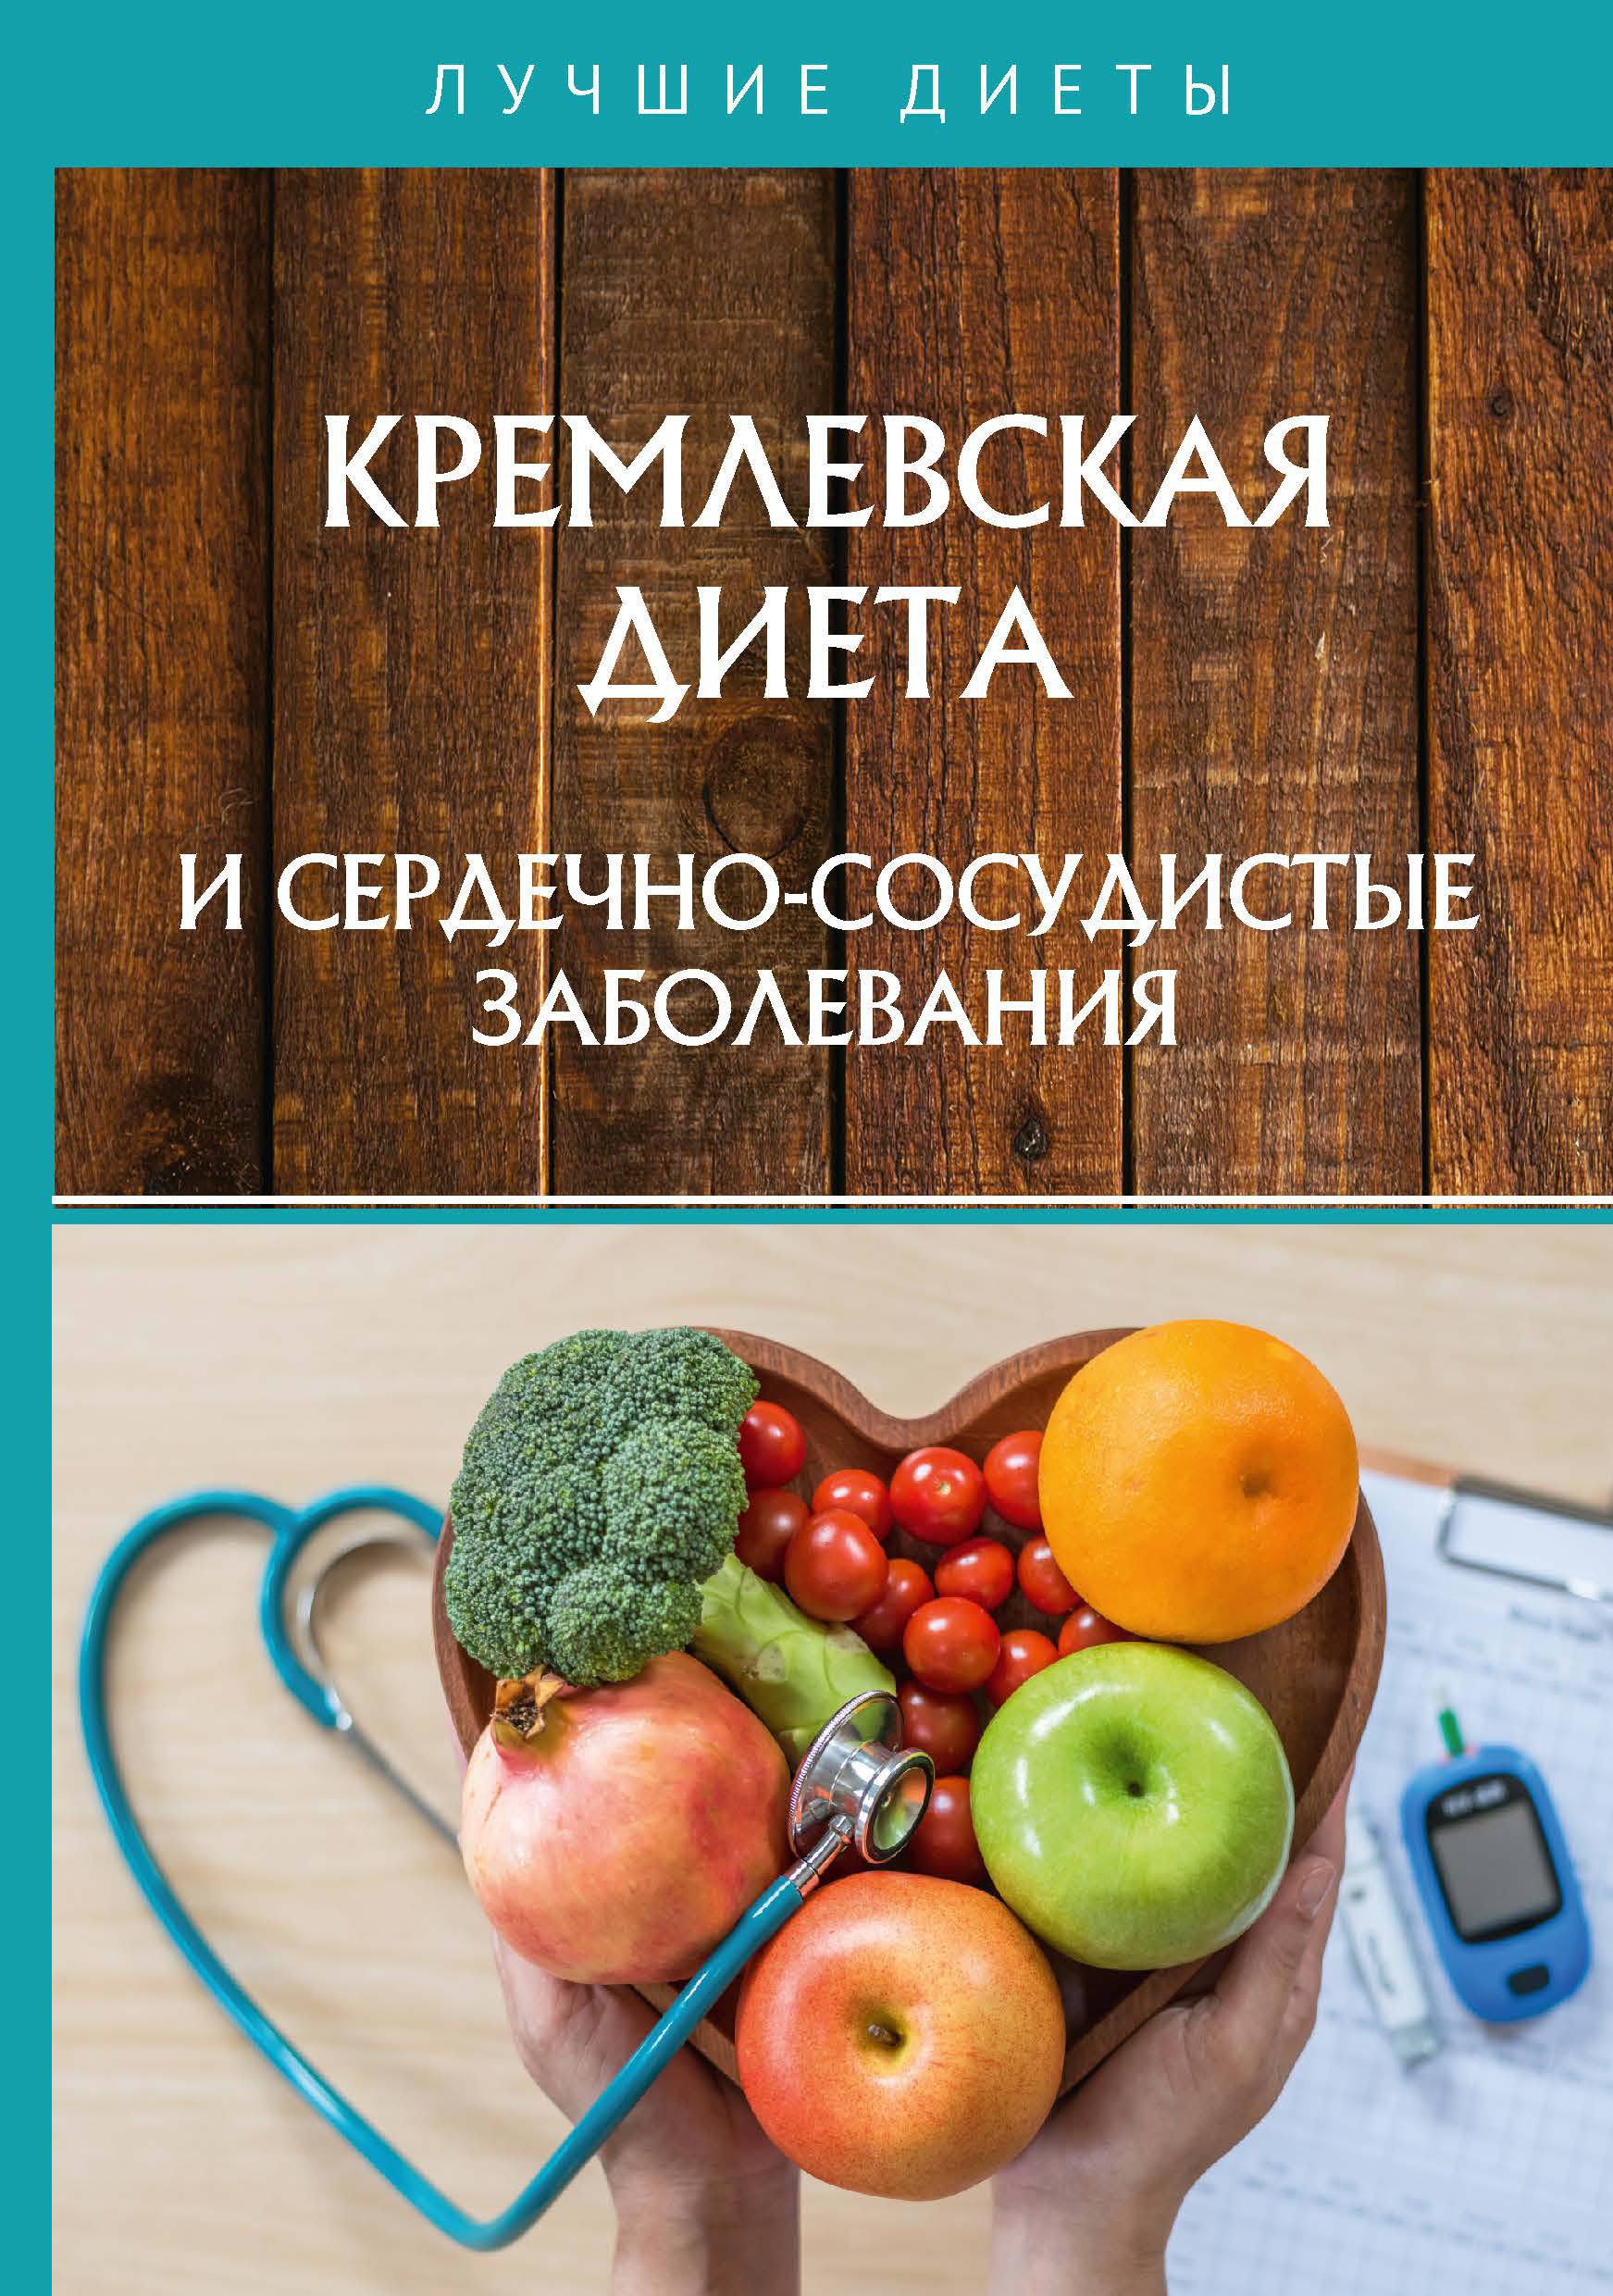 Кремлевская диета и сердечно-сосудистые заболевания